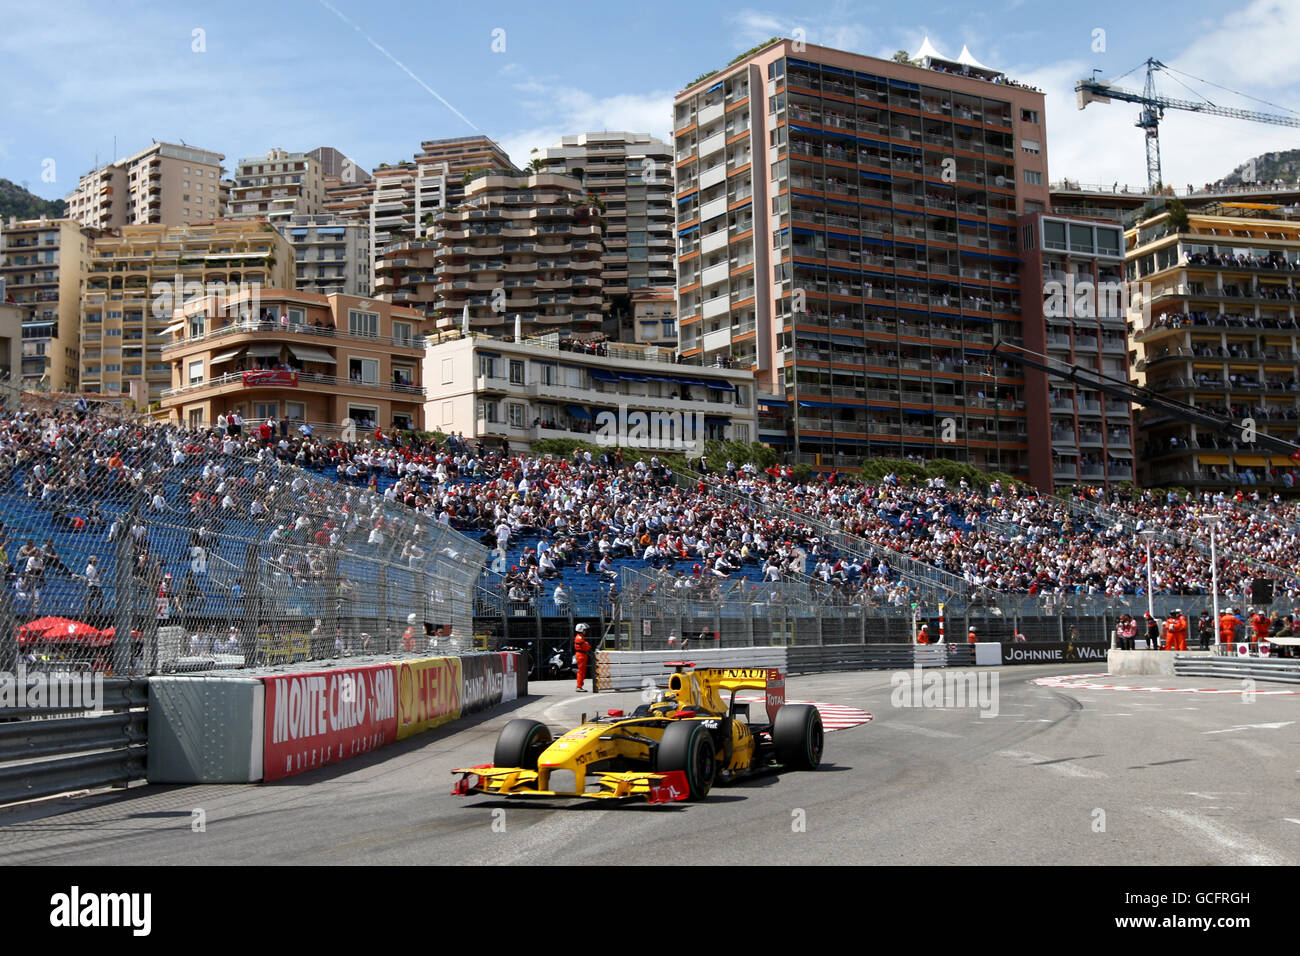 Carreras de Fórmula Uno - Gran Premio de Mónaco - Práctica y calificación - Circuito de Mónaco. Robert Kubica (POL), Renault. Foto de stock